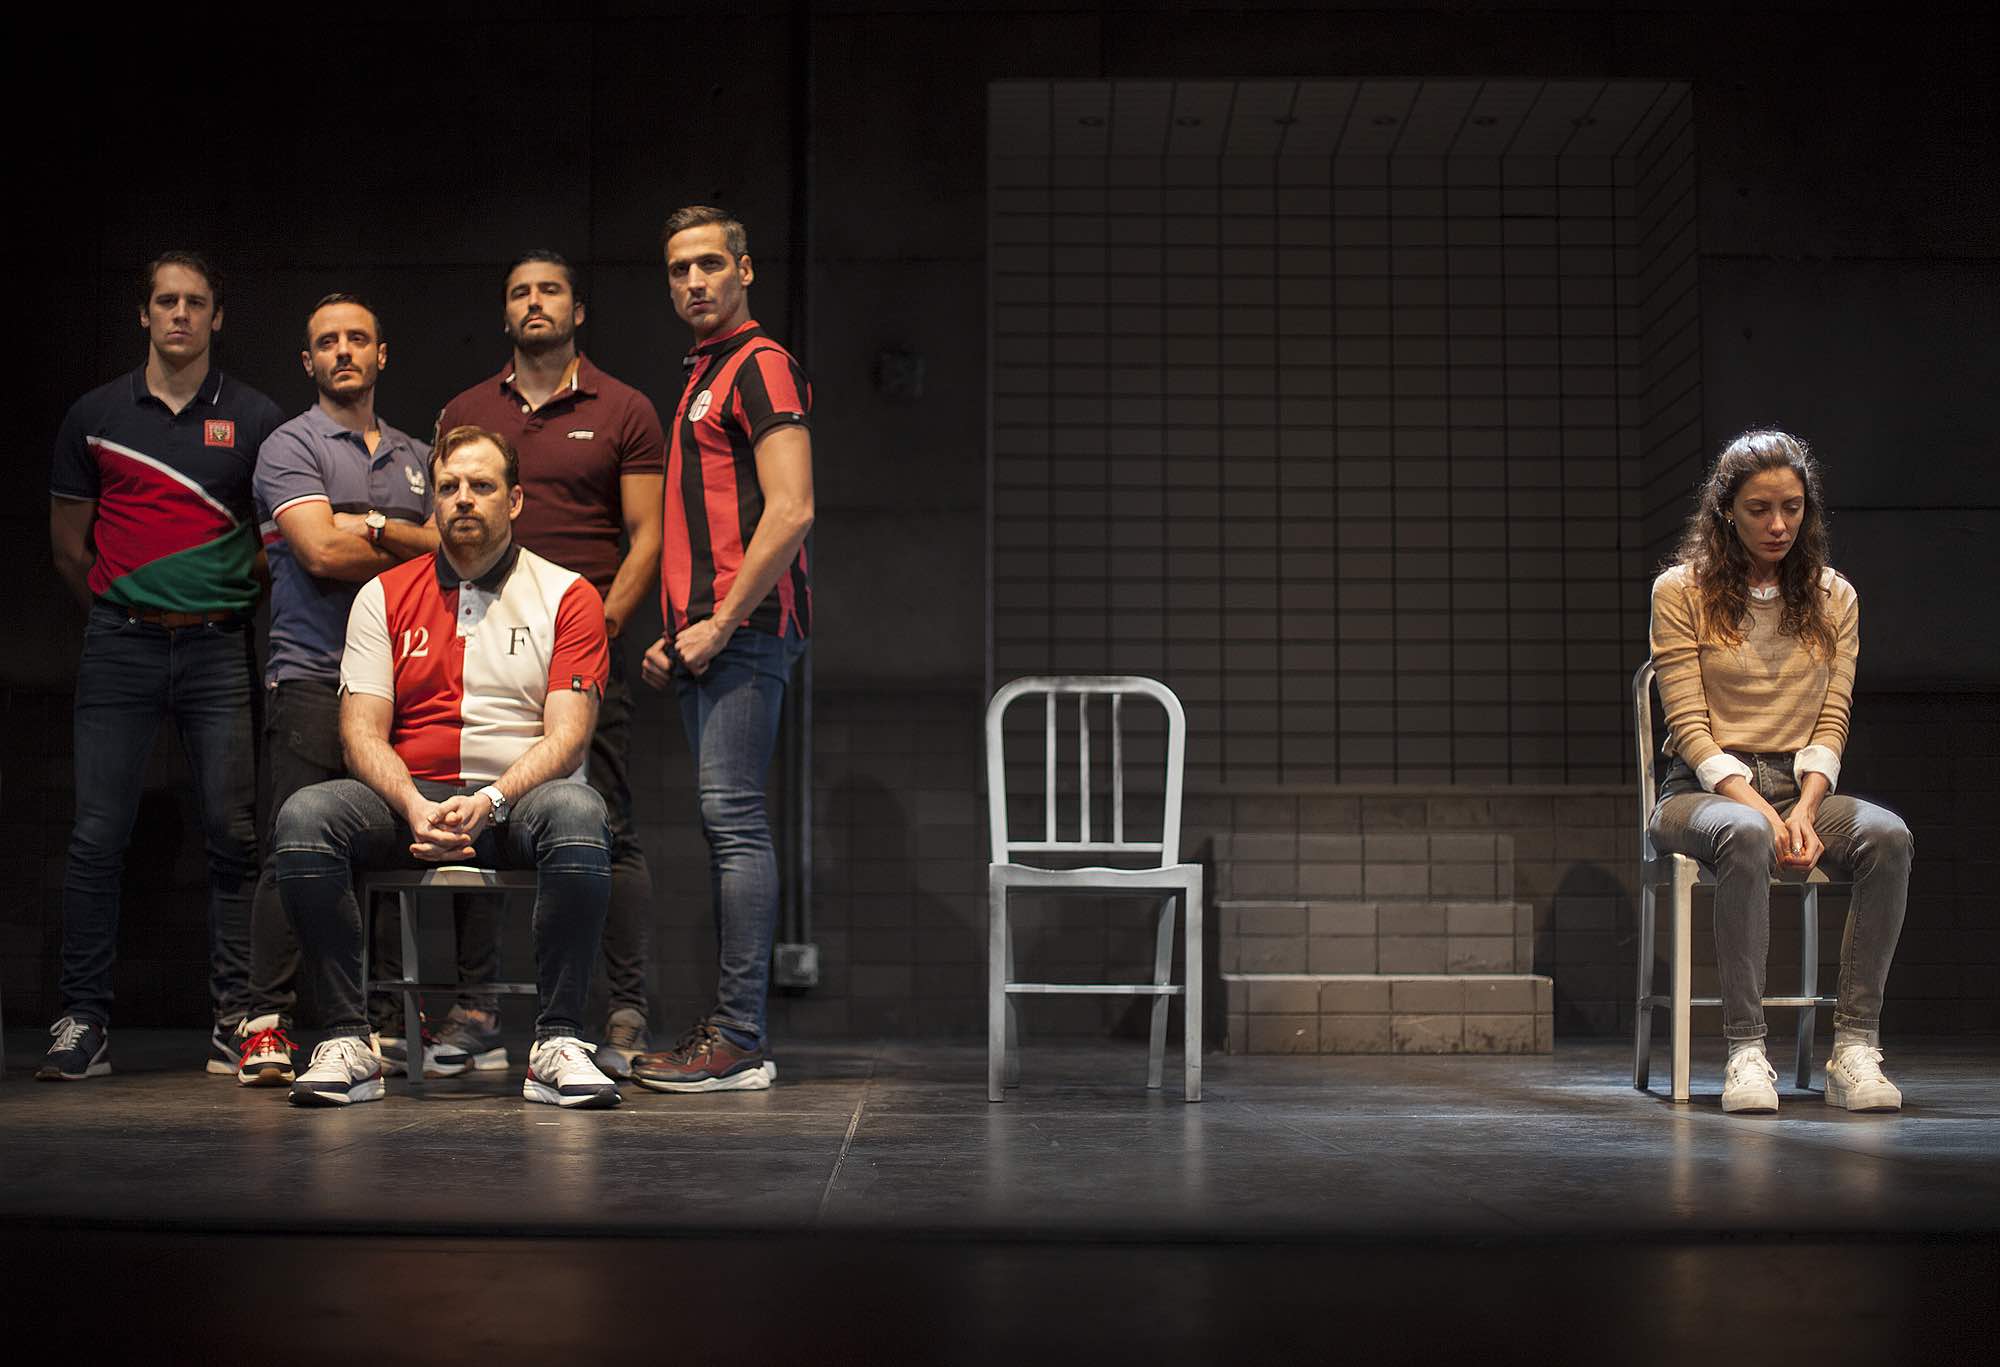 Teatro en Lugo - "Jauría" a obra sobre o xuizo a La Manada